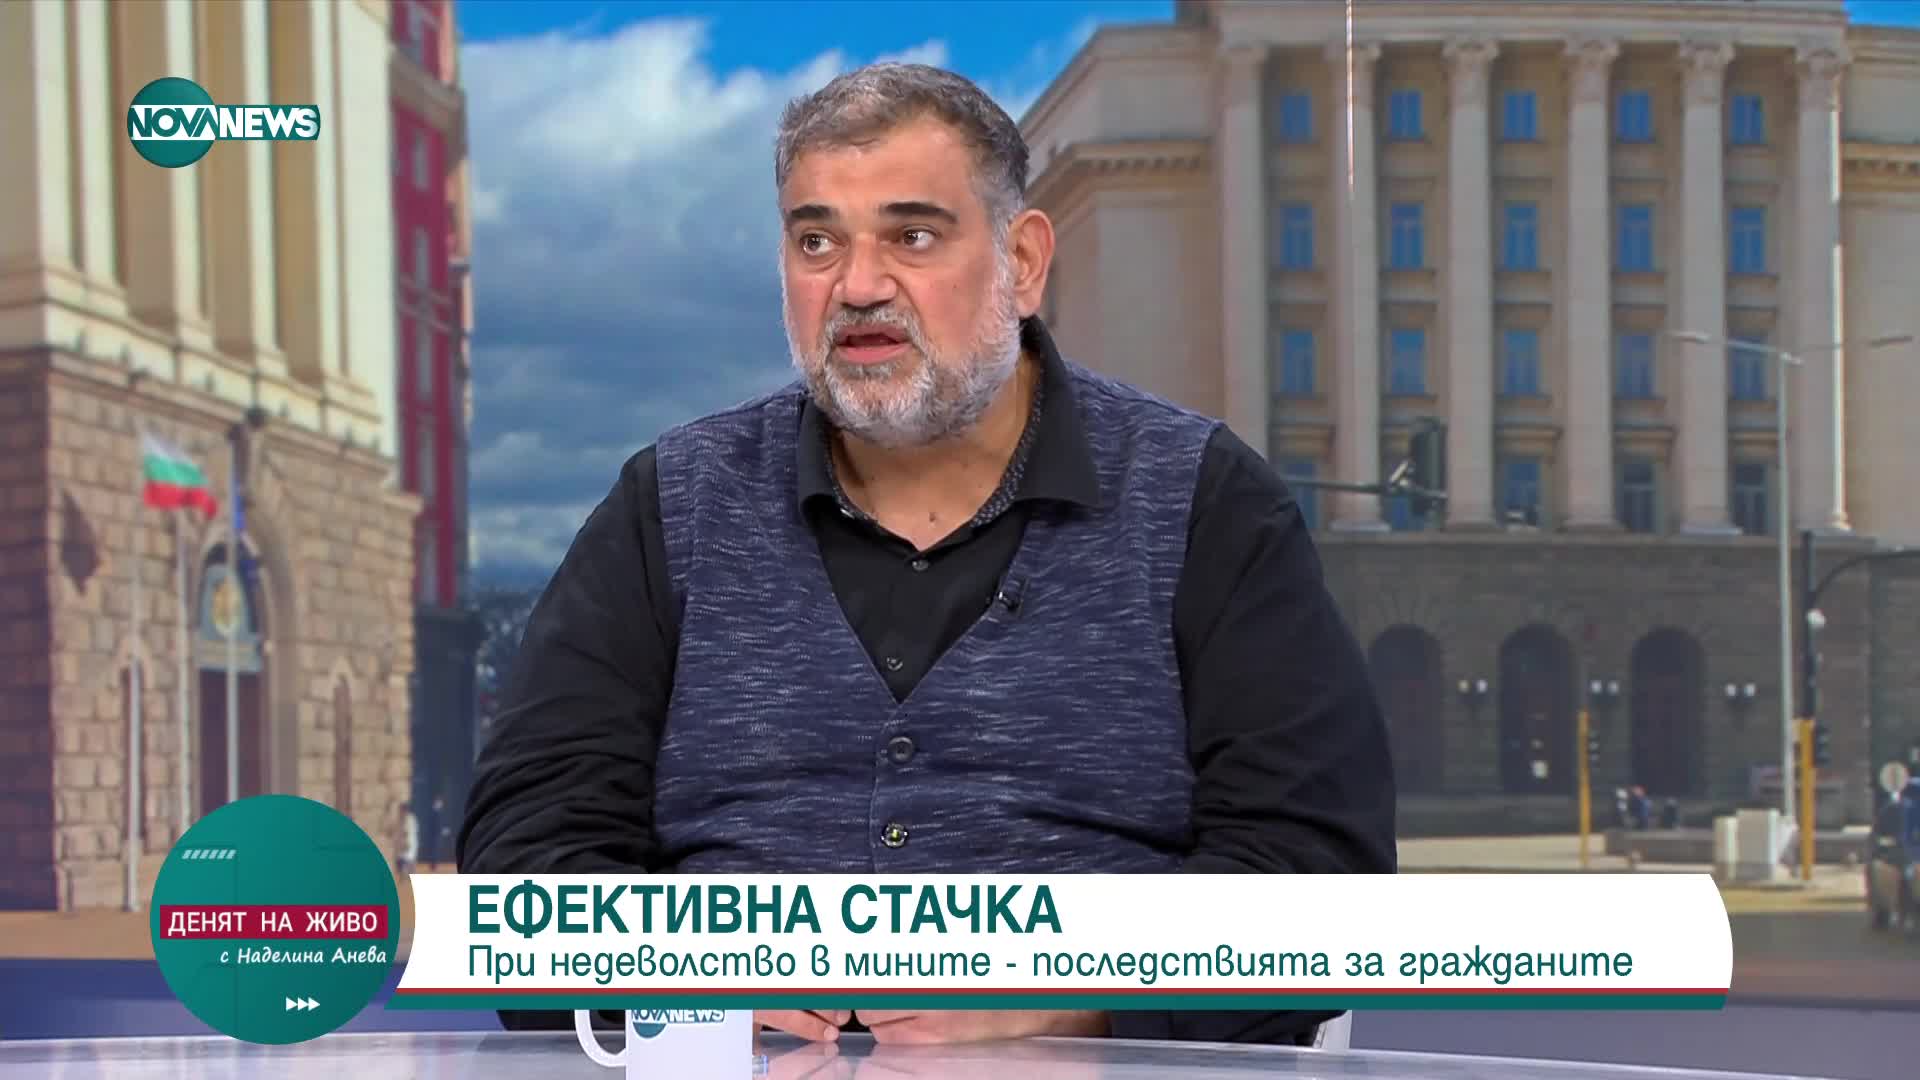 Загоров: Ако има ефективна стачка на миньори и енергетици, ще се усети и в домовете на хората